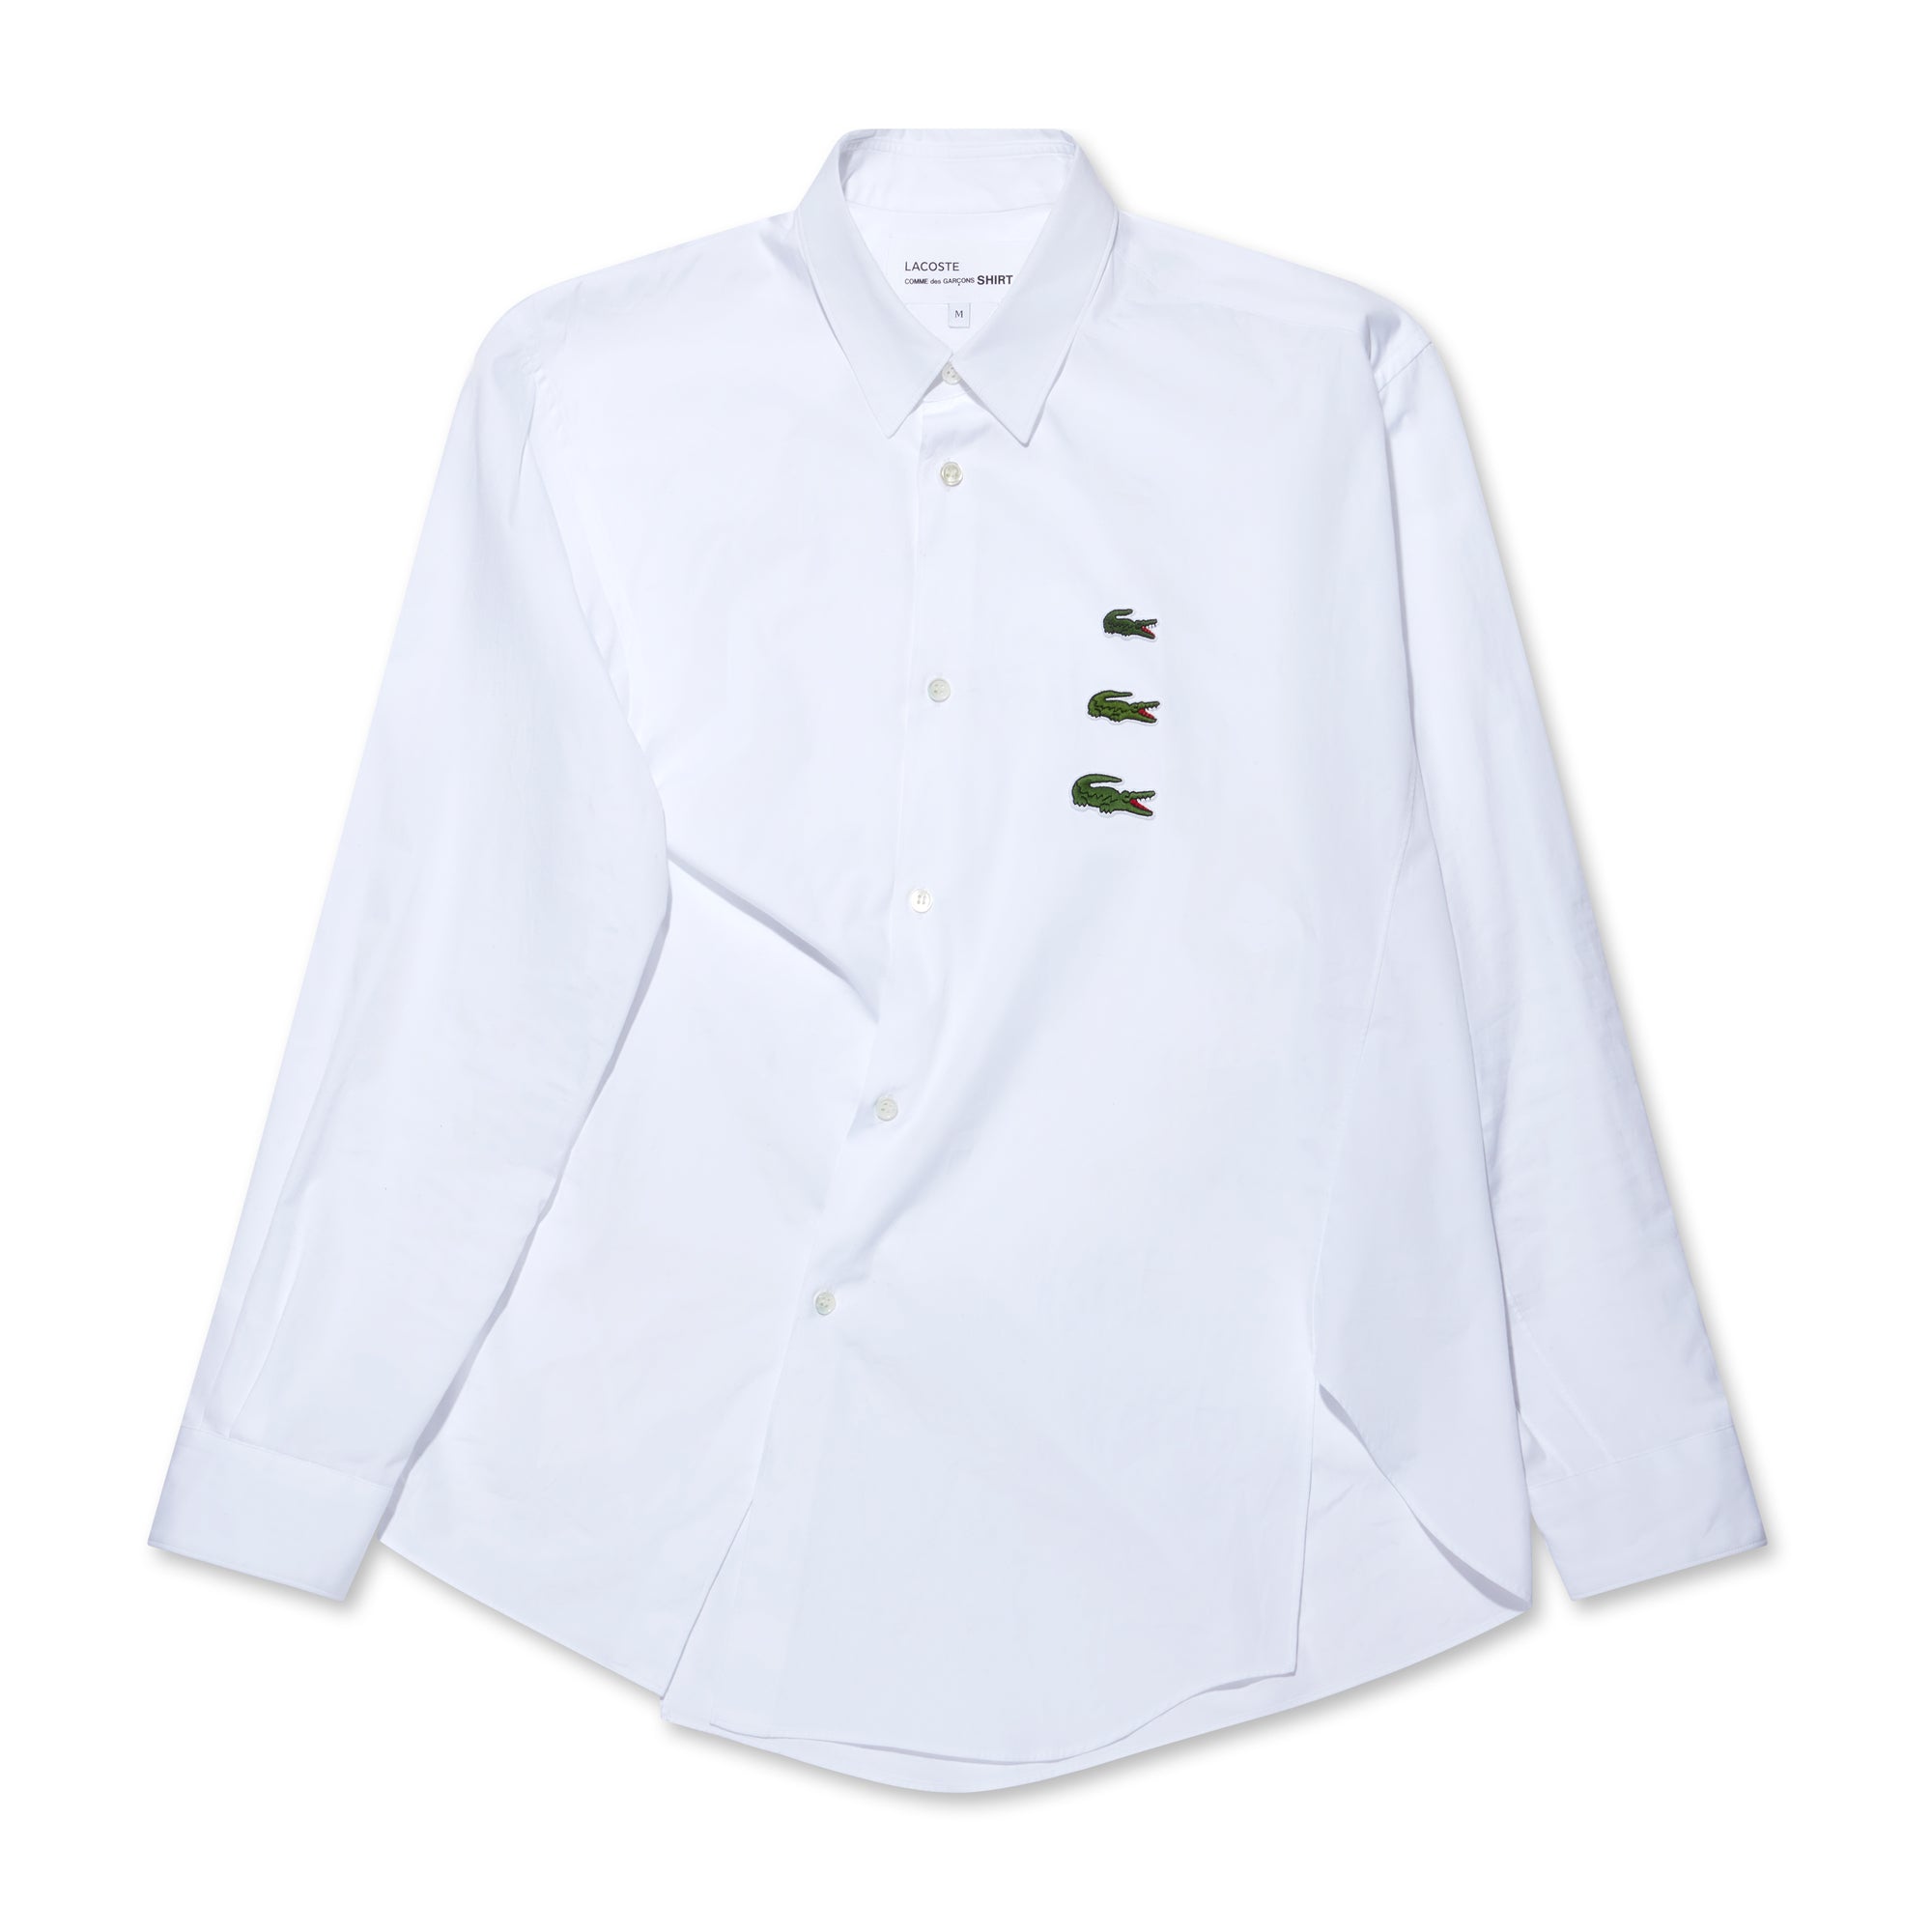 CDG Shirt - Lacoste Men’s Asymmetric Shirt - (White) view 5